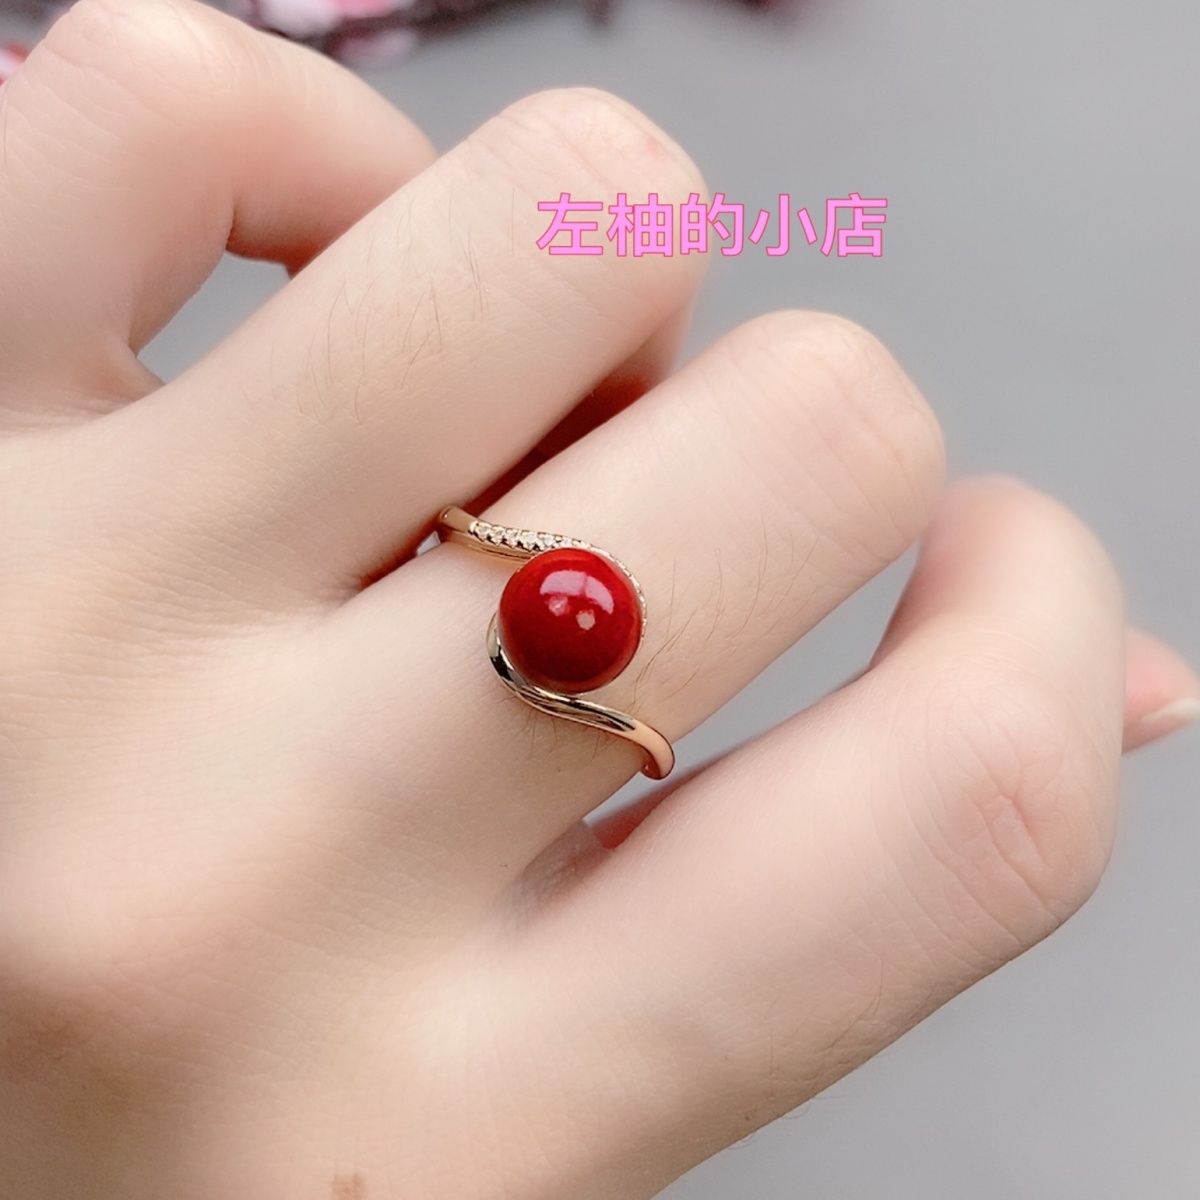 天然台湾朱砂紫金砂红色戒指银镶指环活口可时尚时尚百搭款式珍珠